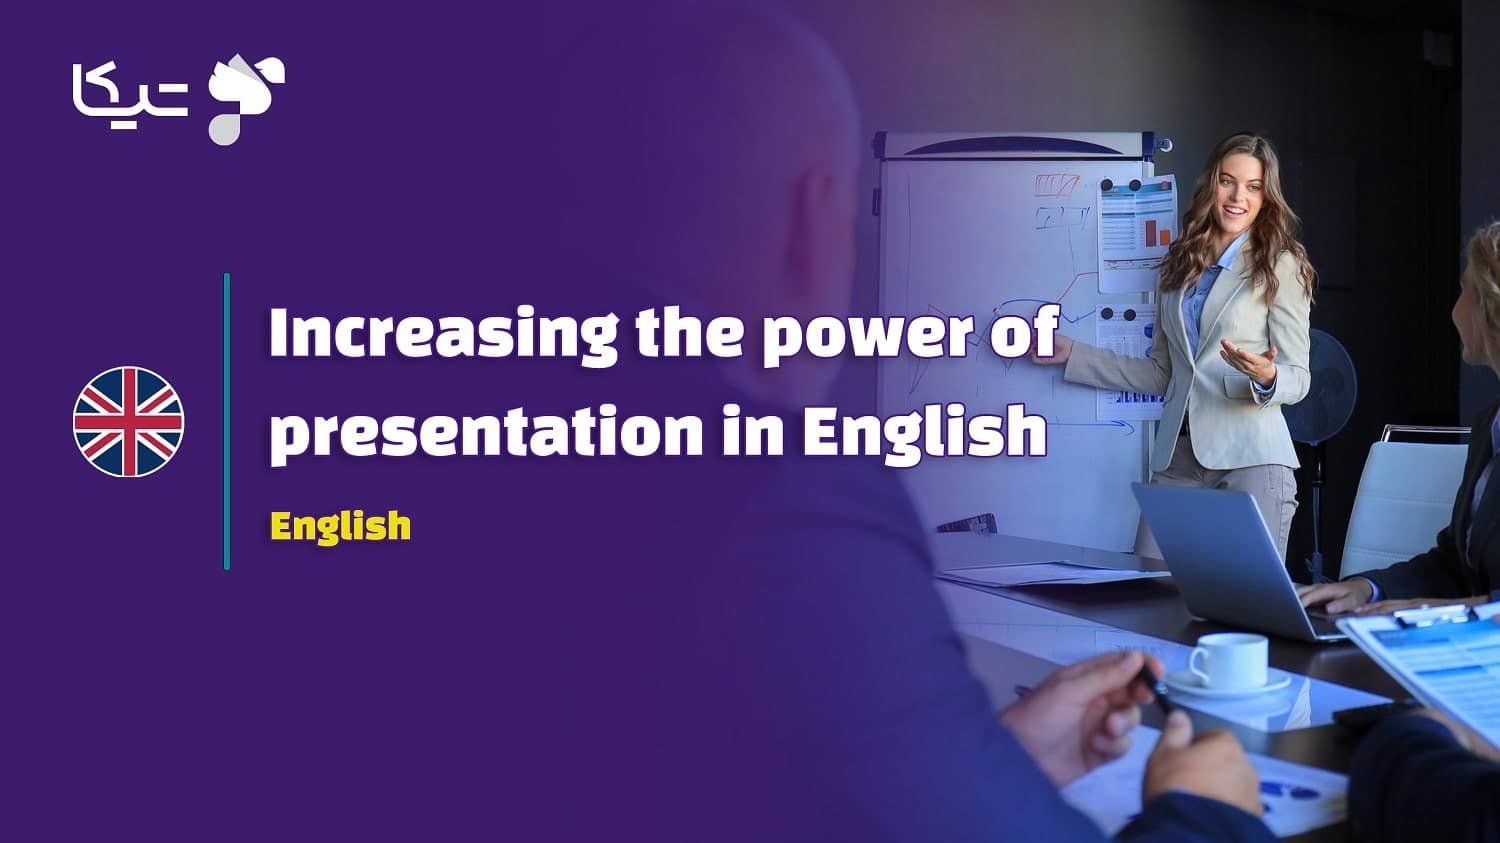 چگونه قدرت ارائه به زبان انگلیسی را به بالاترین سطح برسانیم؟